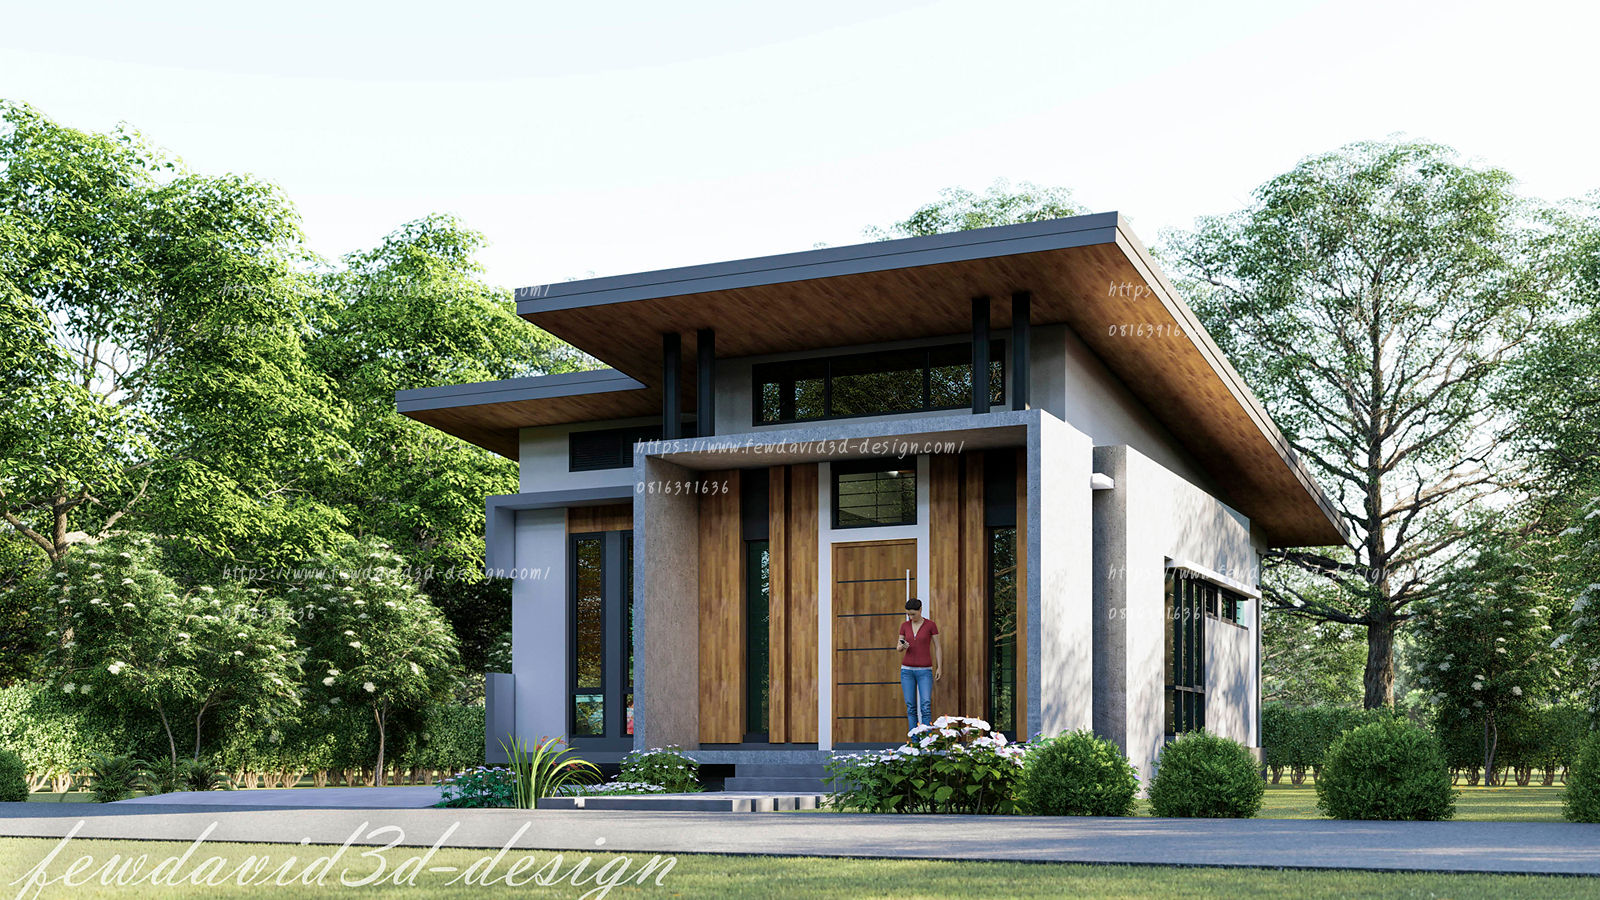 บ้านพักอาศัยชั้นเดียว อ.เมือง จ.ลพบุรี คุณดารารัตน์ฯ, fewdavid3d-design fewdavid3d-design منزل عائلي صغير